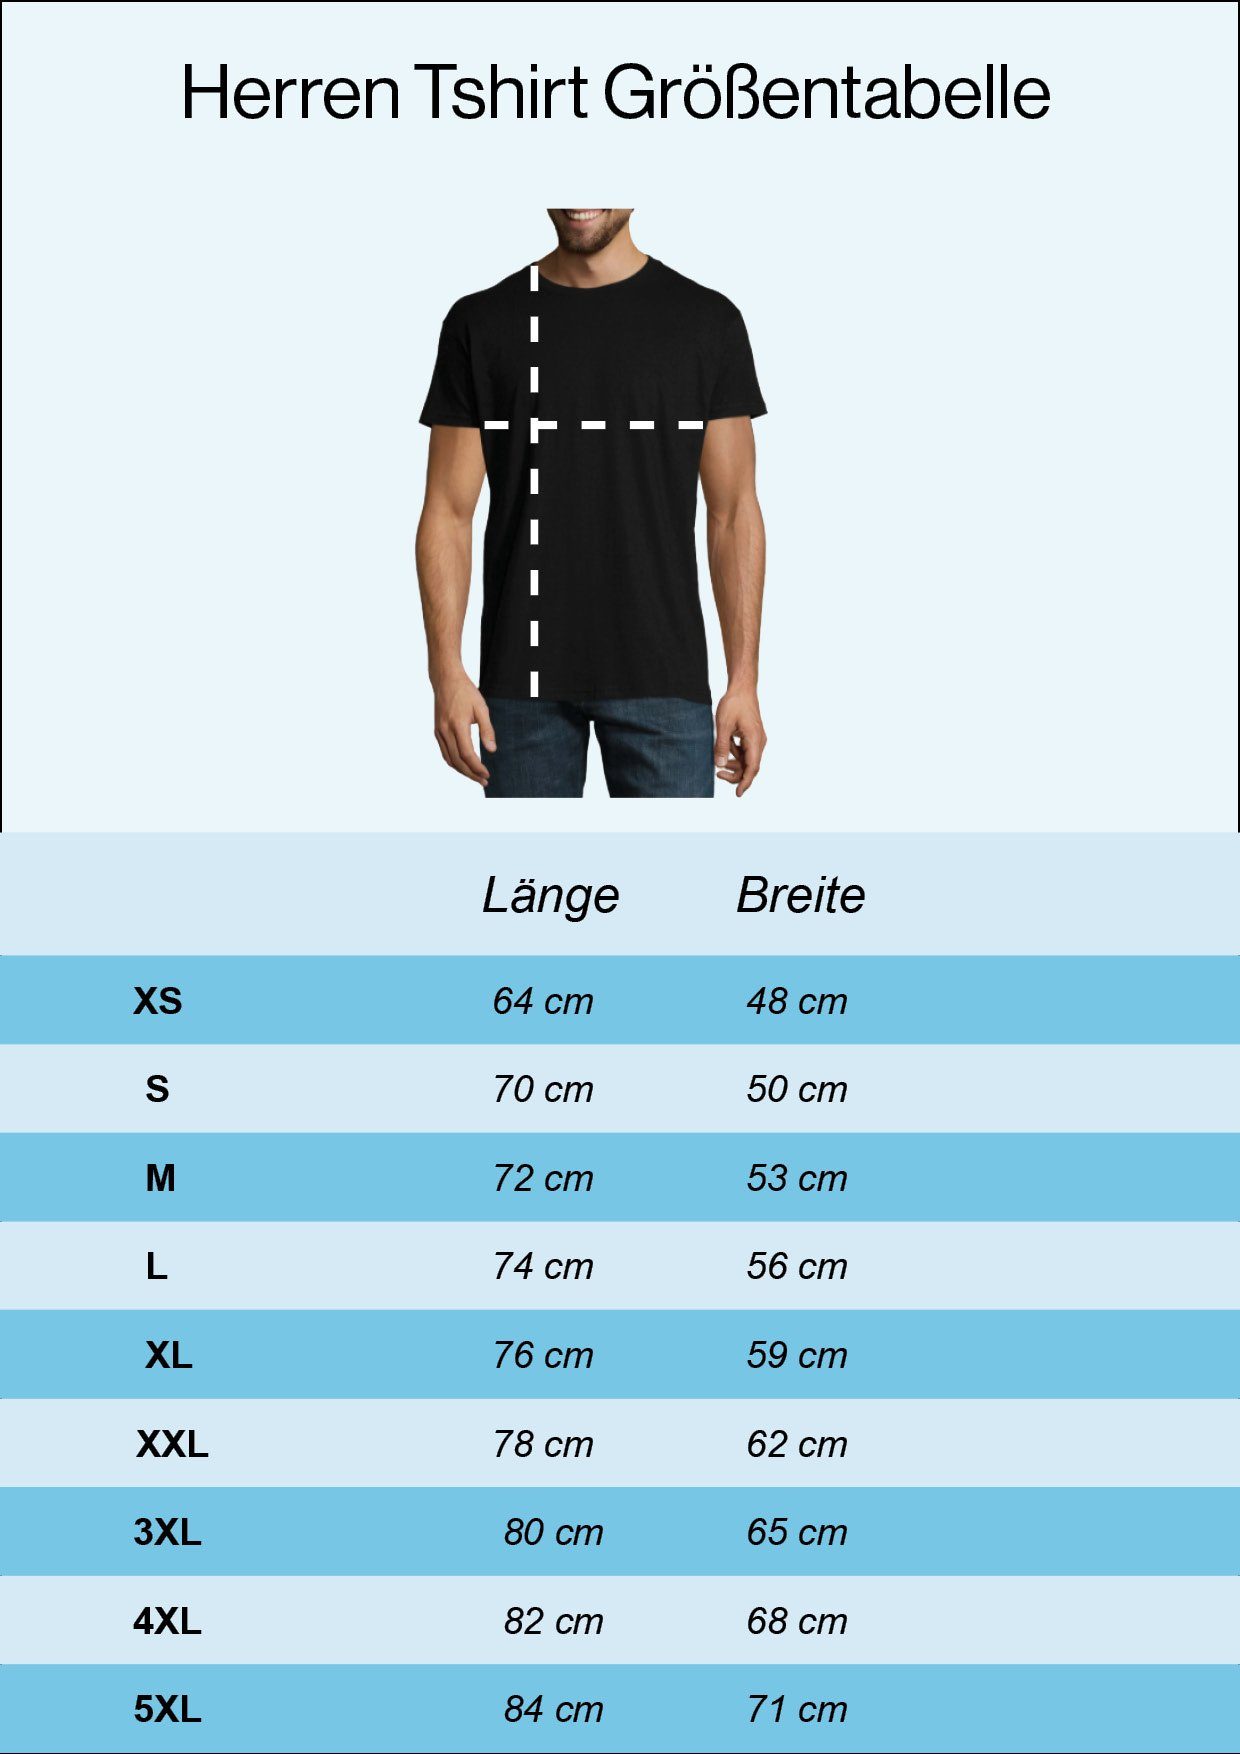 T-Shirt Weiss T-Shirt trendigem Valhalla Youth Spruch Herren mit Designz Odin